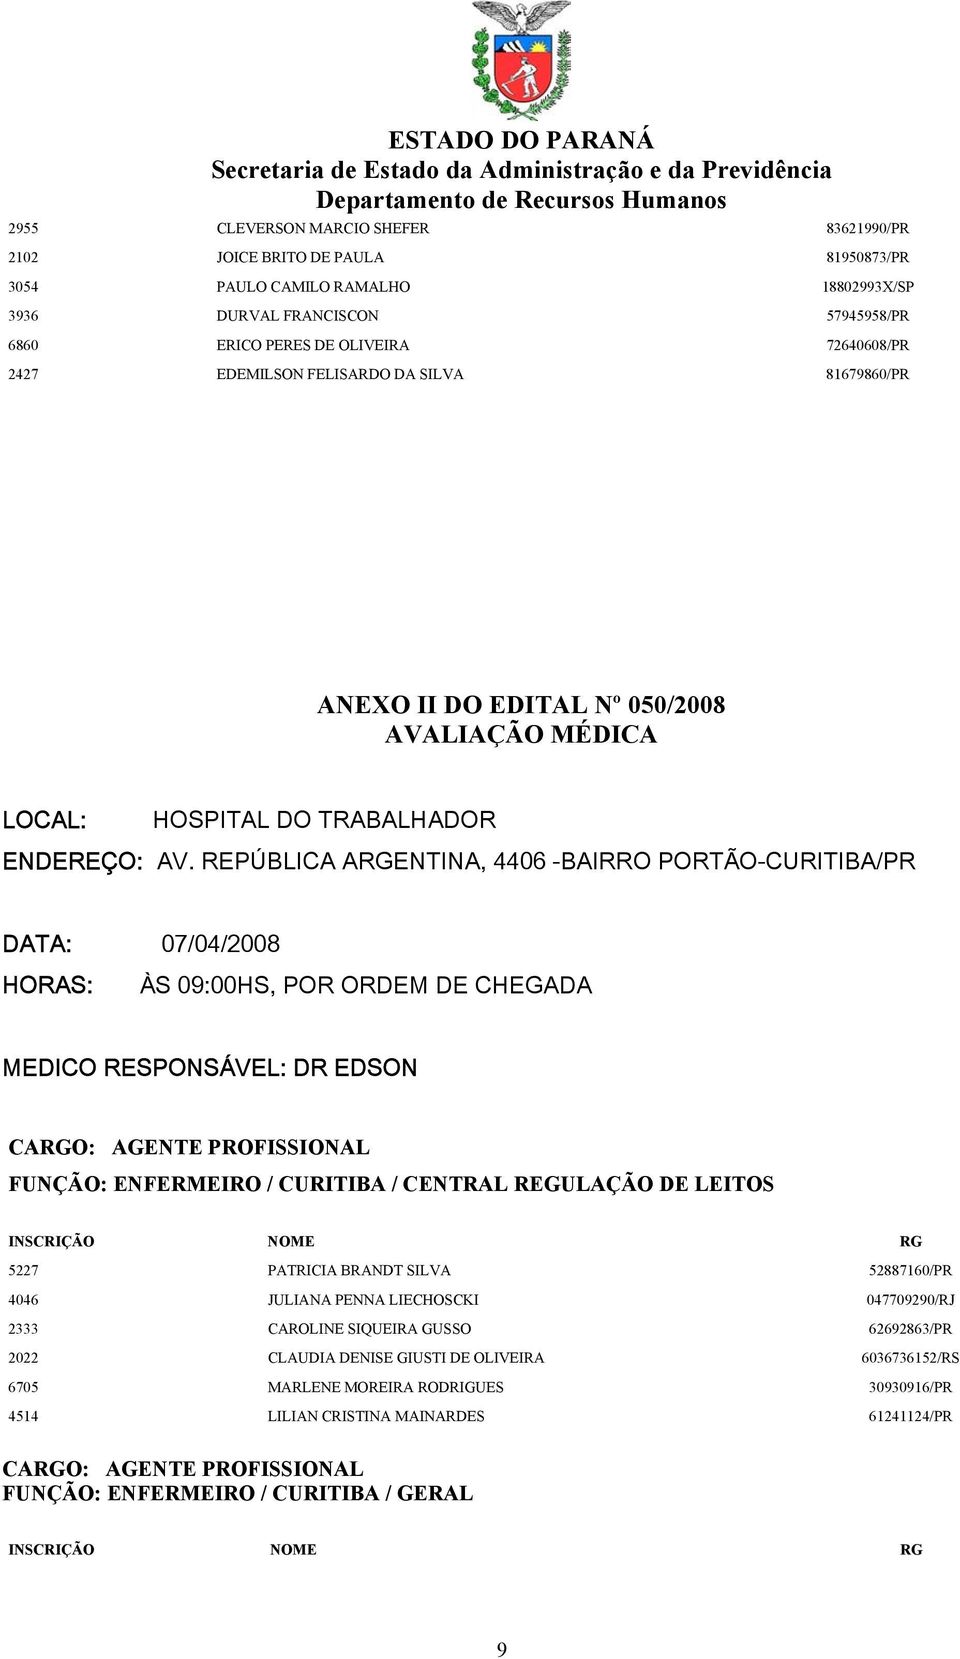 REPÚBLICA ARGENTINA, 4406 -BAIRRO PORTÃO-CURITIBA/PR DATA: 07/04/2008 HORAS: ÀS 09:00HS, POR ORDEM DE CHEGADA MEDICO RESPONSÁVEL: DR EDSON FUNÇÃO: ENFERMEIRO / CURITIBA / CENTRAL REGULAÇÃO DE LEITOS